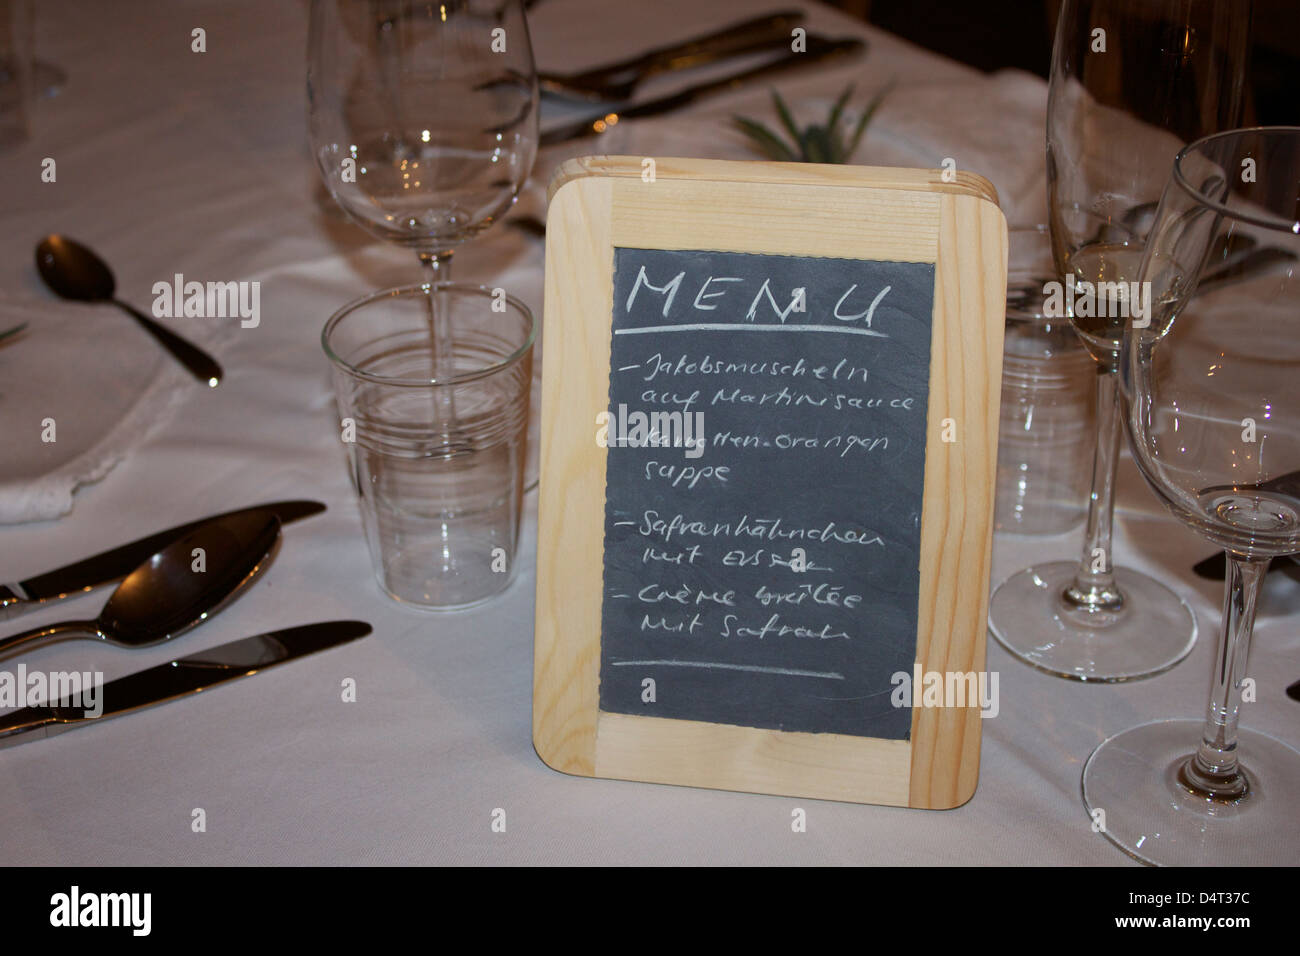 A menu written in German on a blackboard on a white table. Speisekarte auf Deutsch. Stock Photo